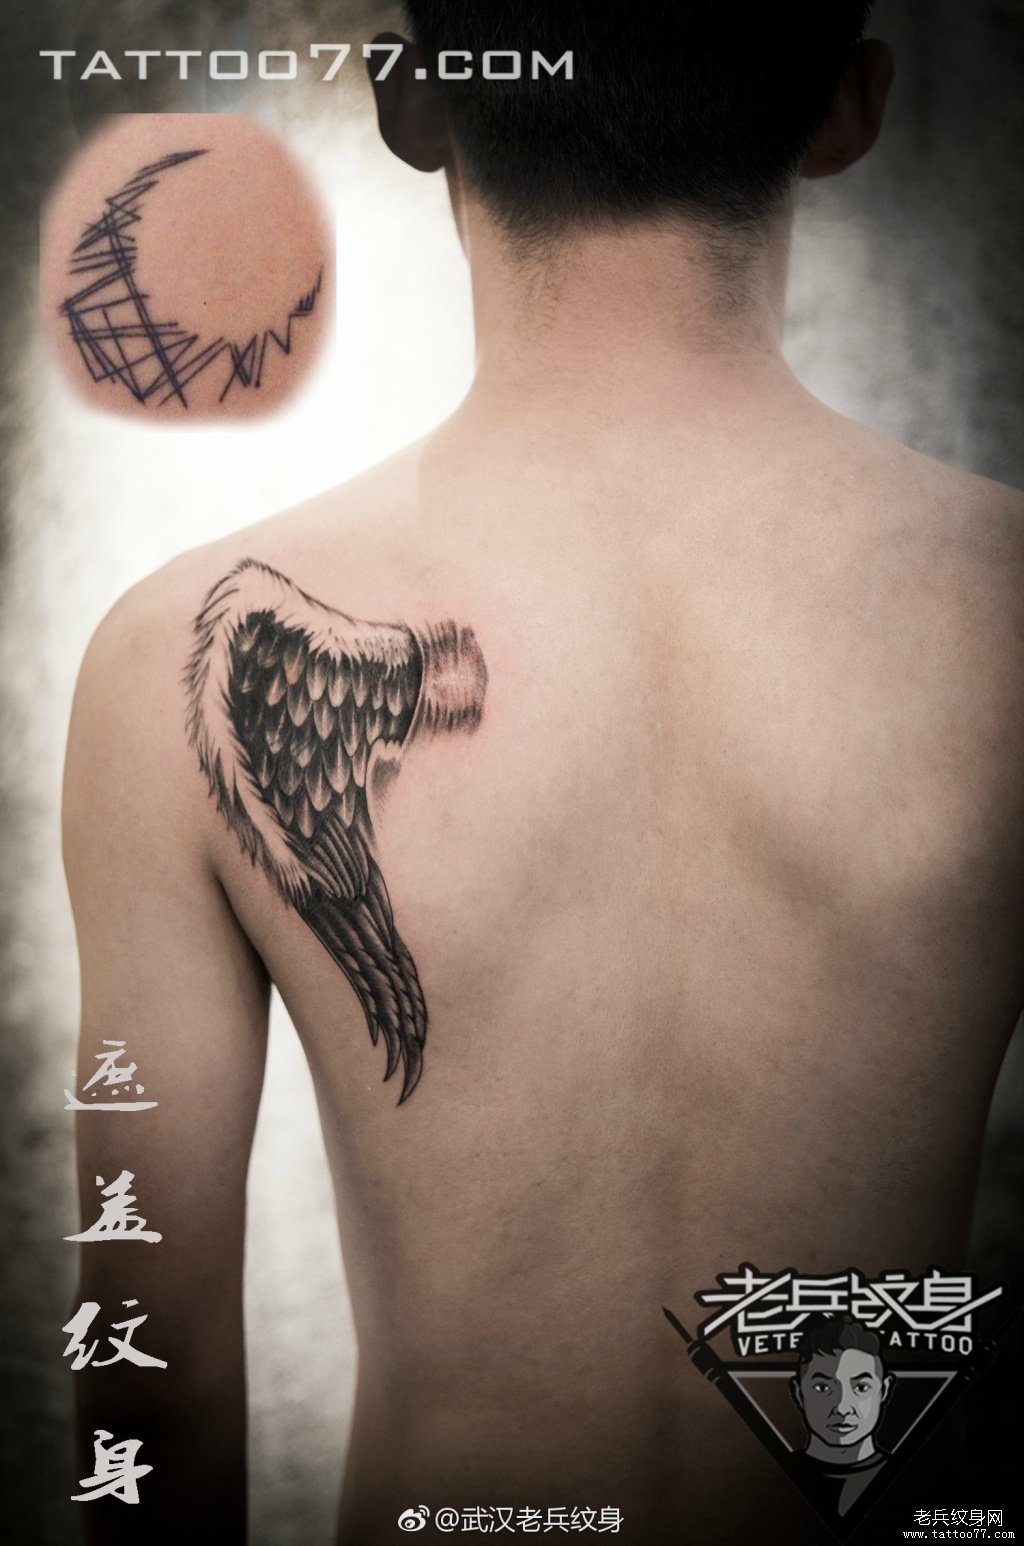 武汉纹身师打造的背部天使翅膀纹身图案作品